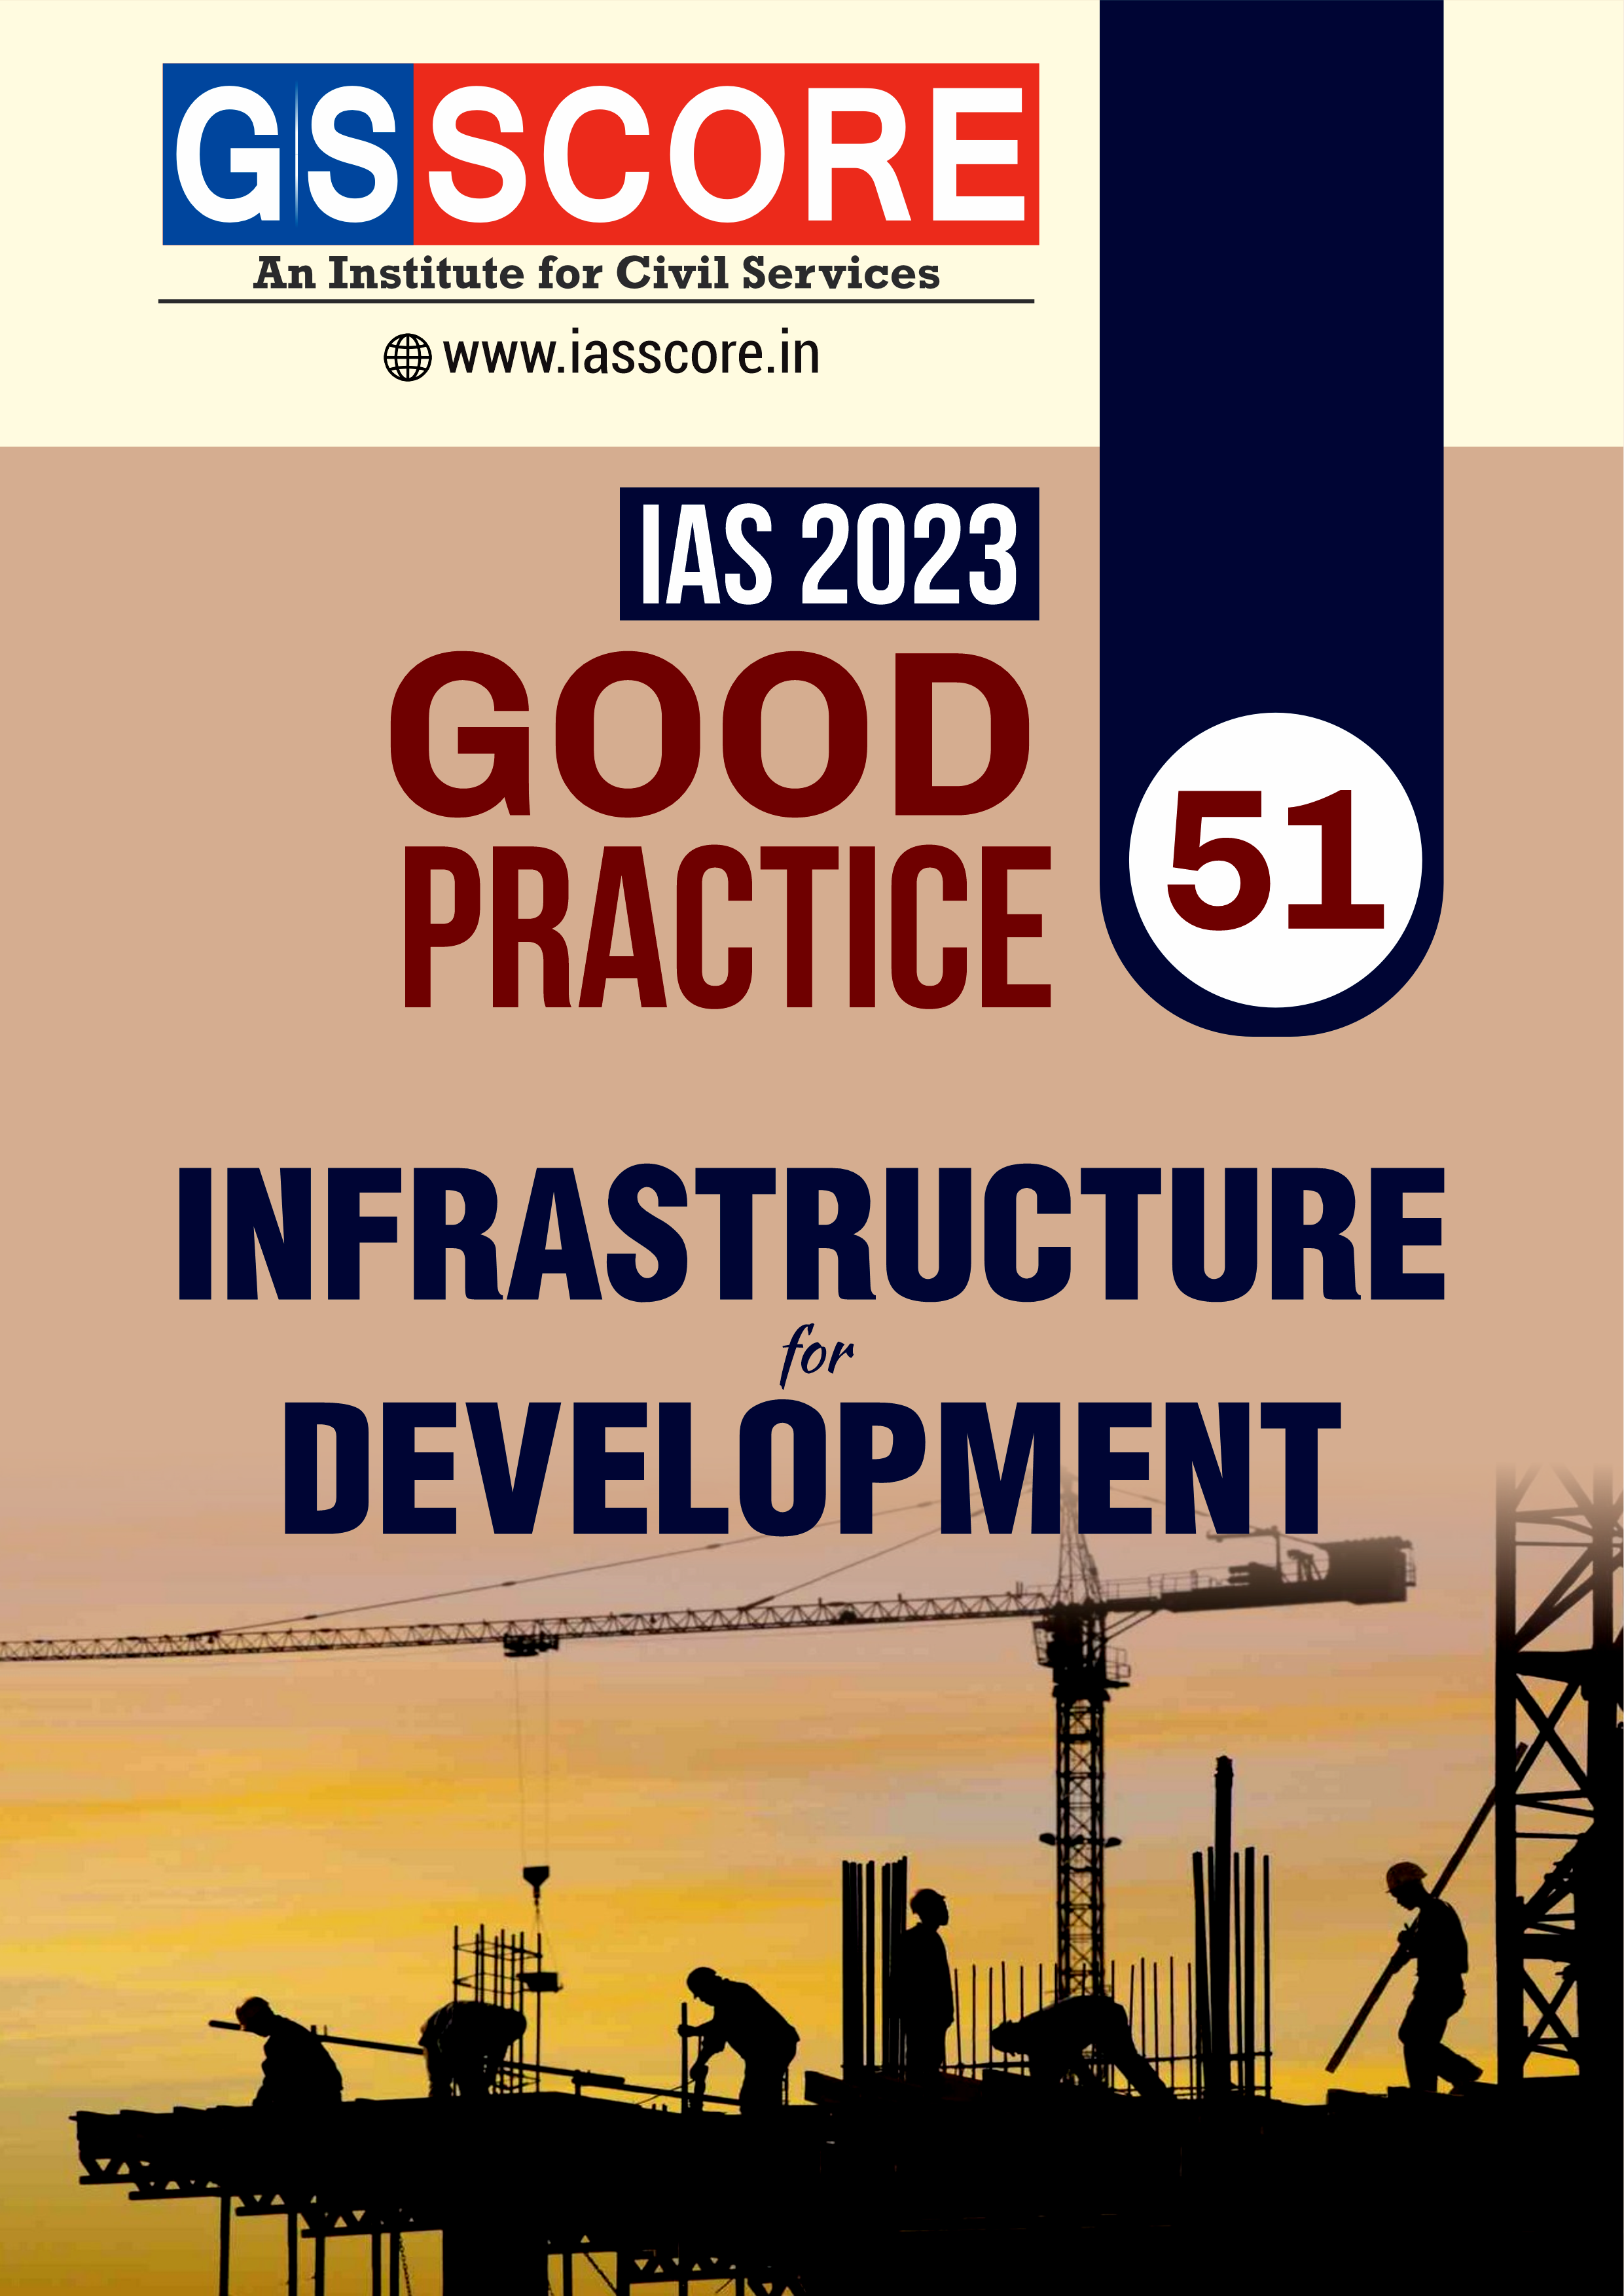 Good Practice - 'Infrastructure for development'